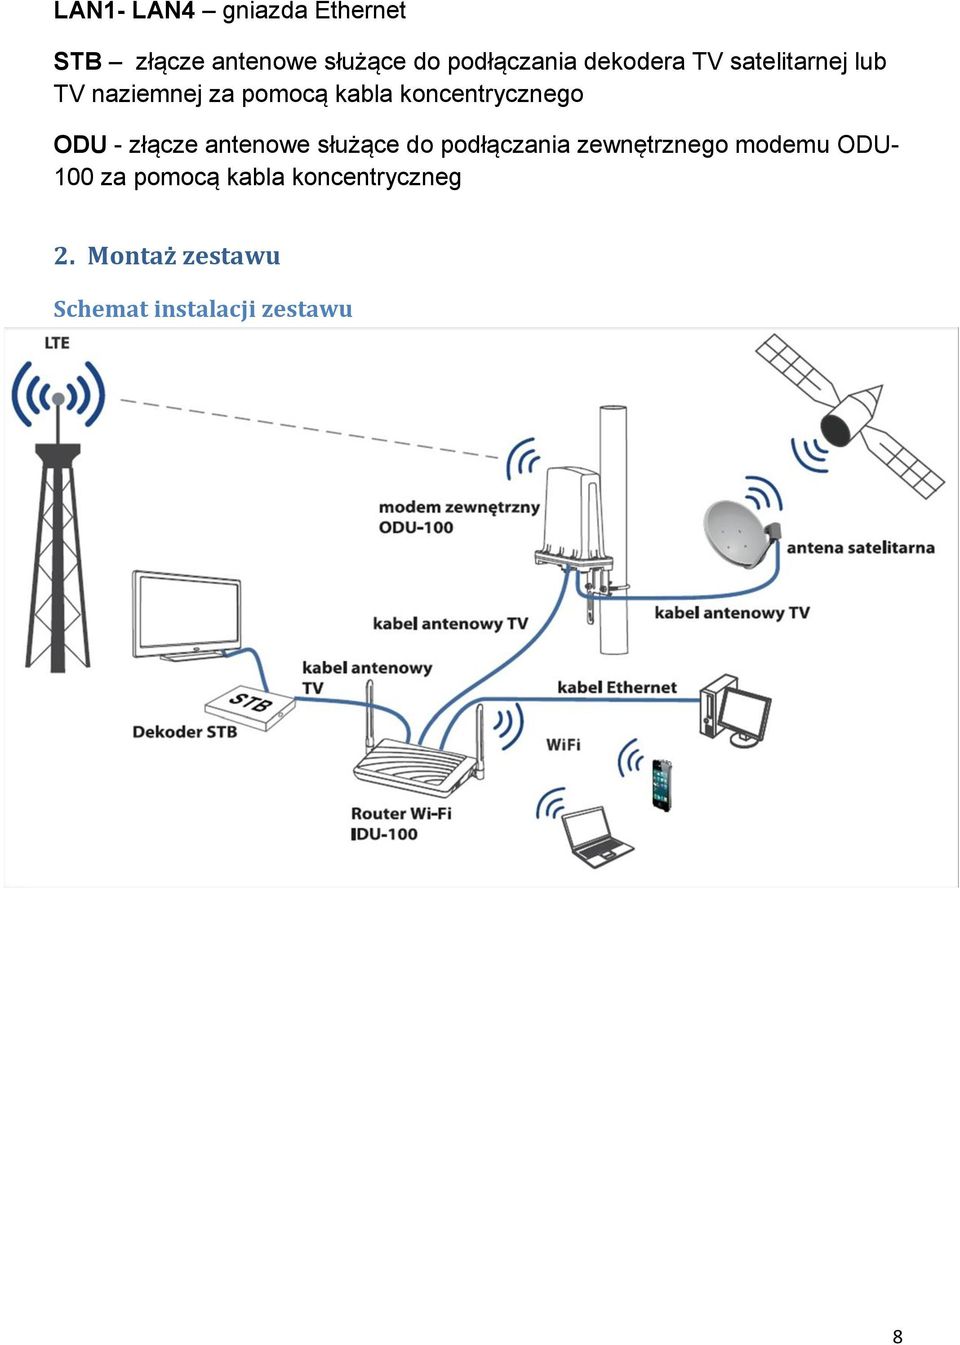 ODU - złącze antenowe służące do podłączania zewnętrznego modemu ODU- 100